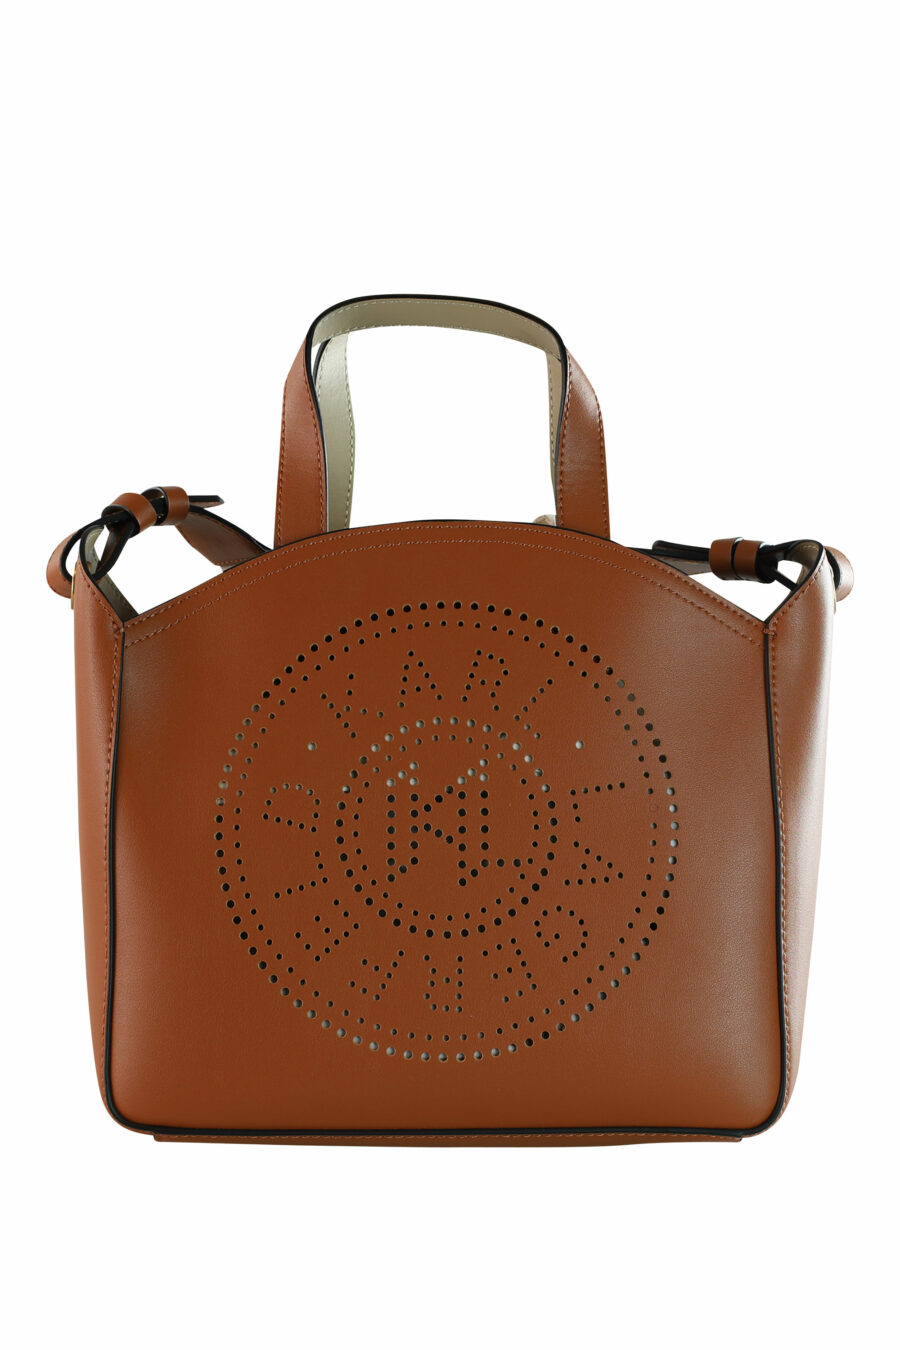 Tote bag marrón con logo "k/circle" monocromático - 8720744234708